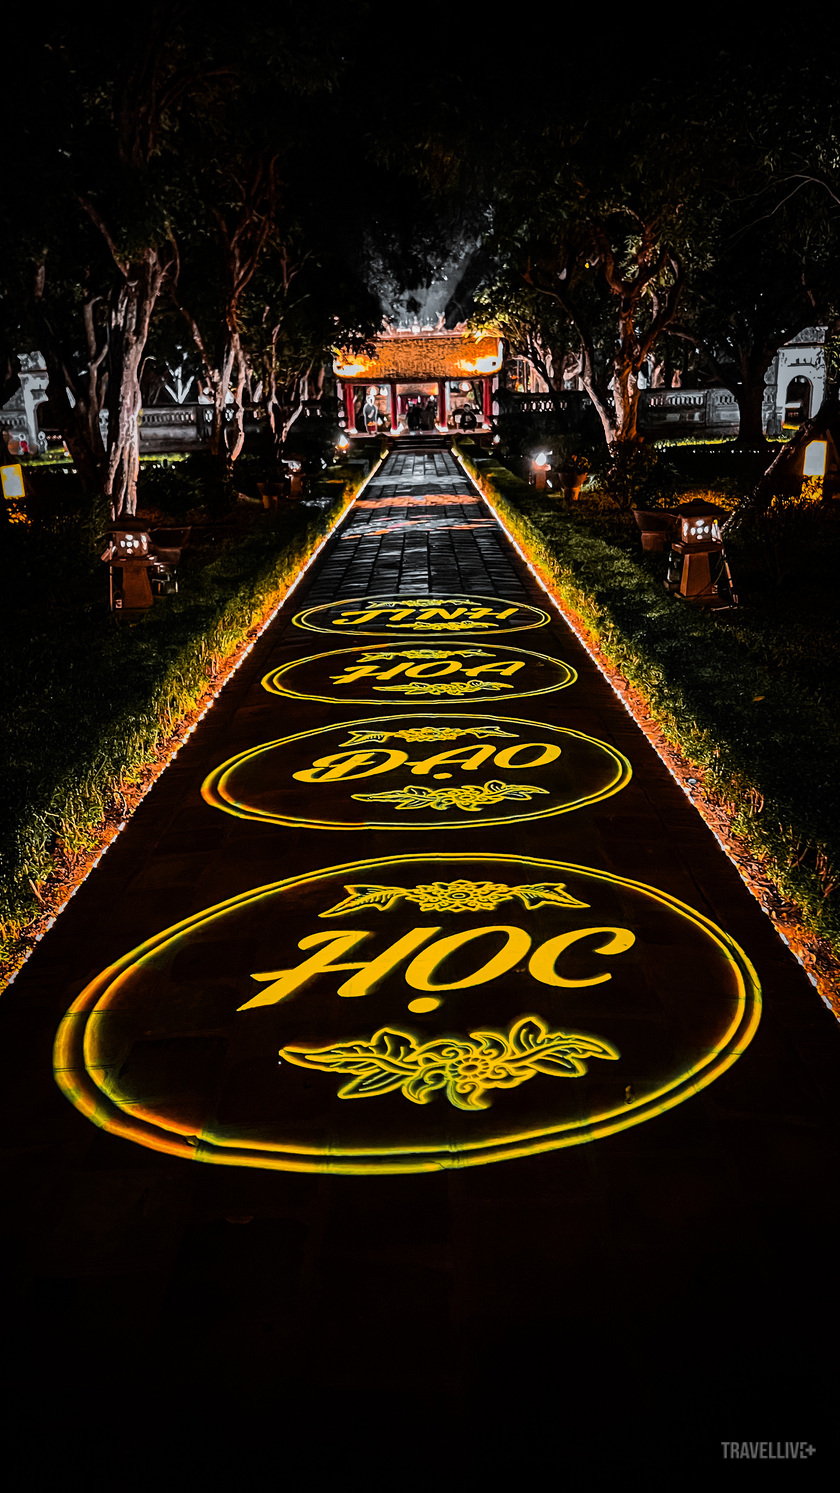 Bốn chữ “Tinh hoa đạo học” được thể hiện trên trục đường chính dẫn tới cổng Đại Trung chính là ý tưởng chủ đạo của chương trình trải nghiệm.